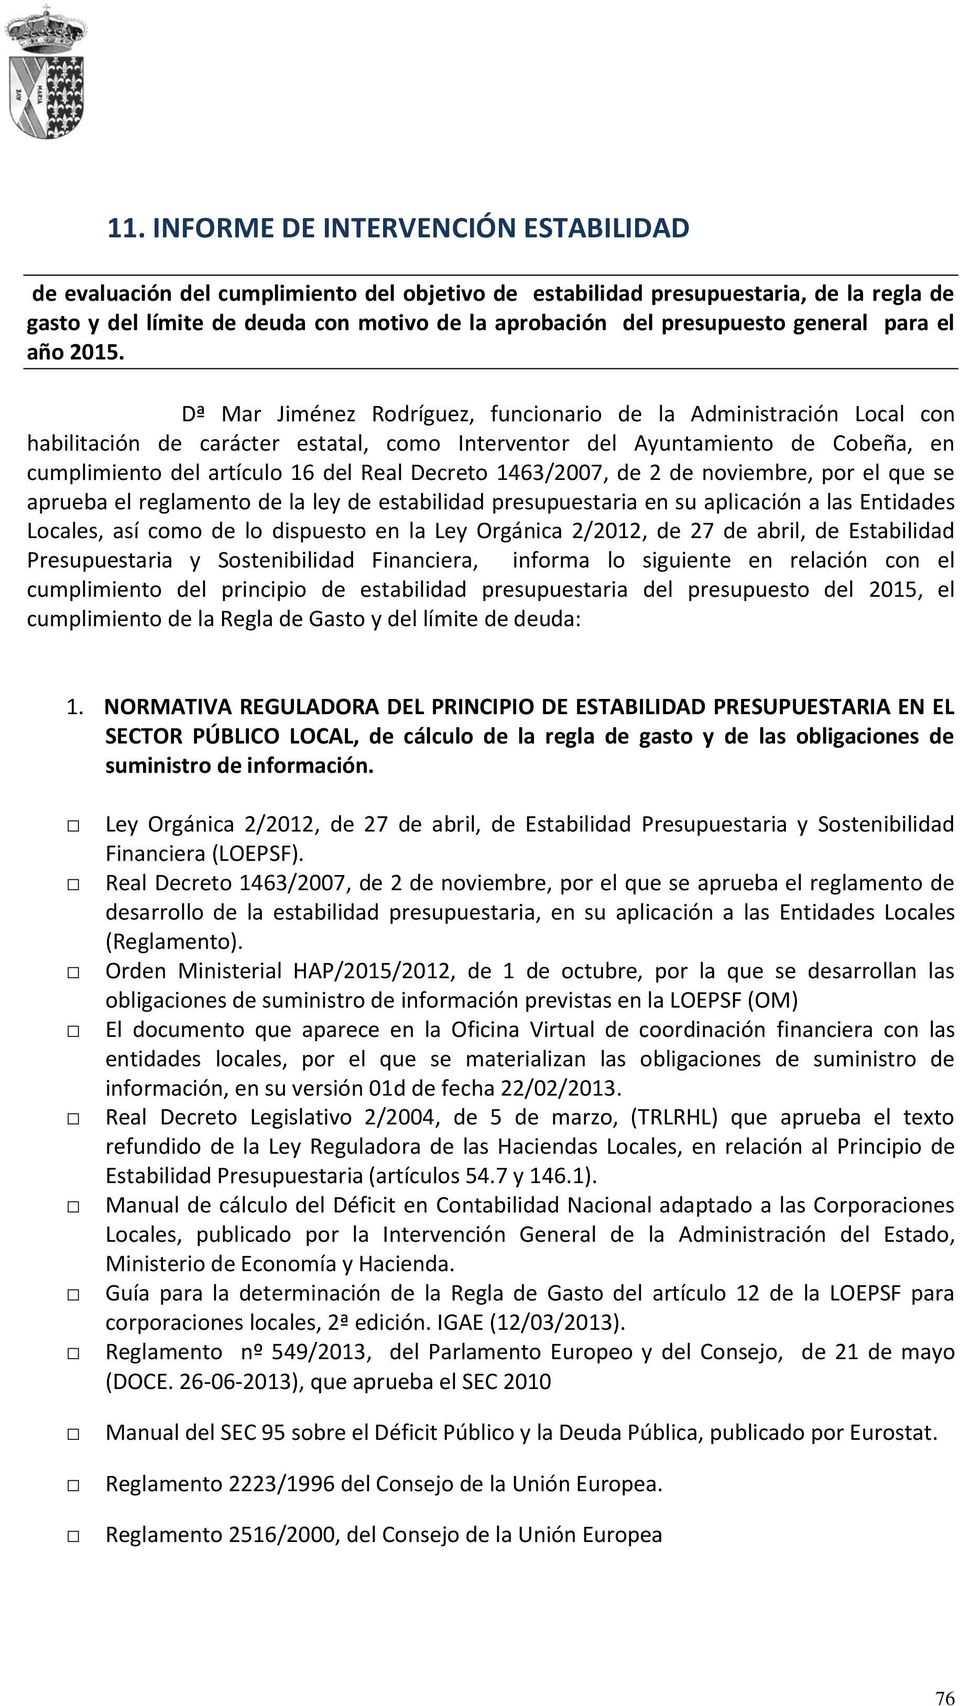 Dª Mar Jiménez Rodríguez, funcionario de la Administración Local con habilitación de carácter estatal, como Interventor del Ayuntamiento de Cobeña, en cumplimiento del artículo 16 del Real Decreto